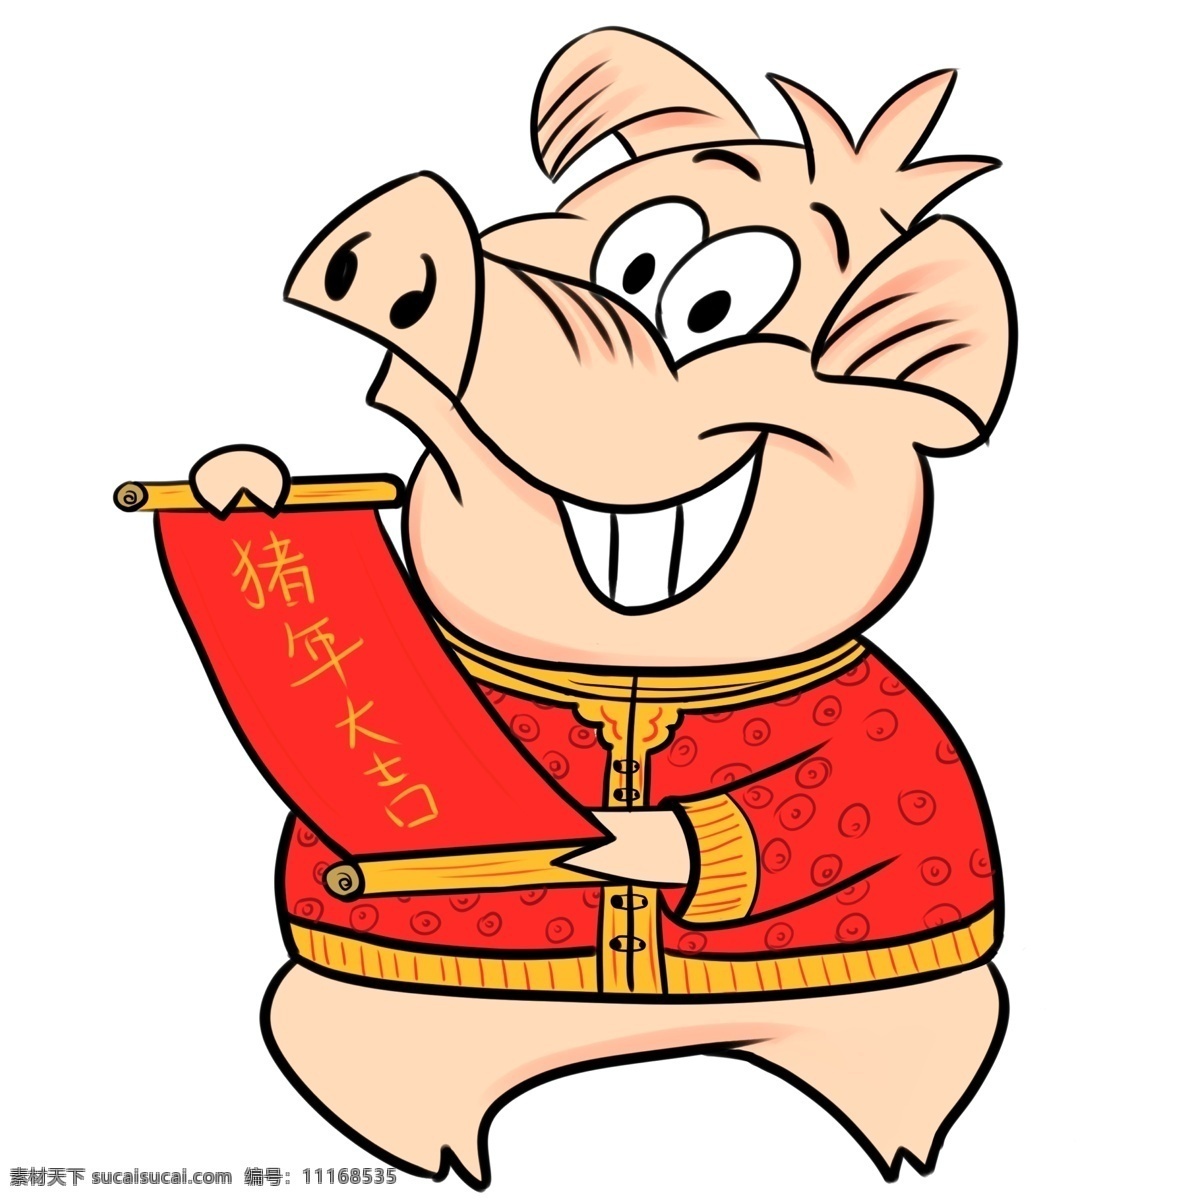 猪年 大吉 卡通 潮 猪 喜庆 中国风 春节 插画 新春 新年 2019年 小猪形象 猪年形象 潮漫 猪年大吉 小猪元素